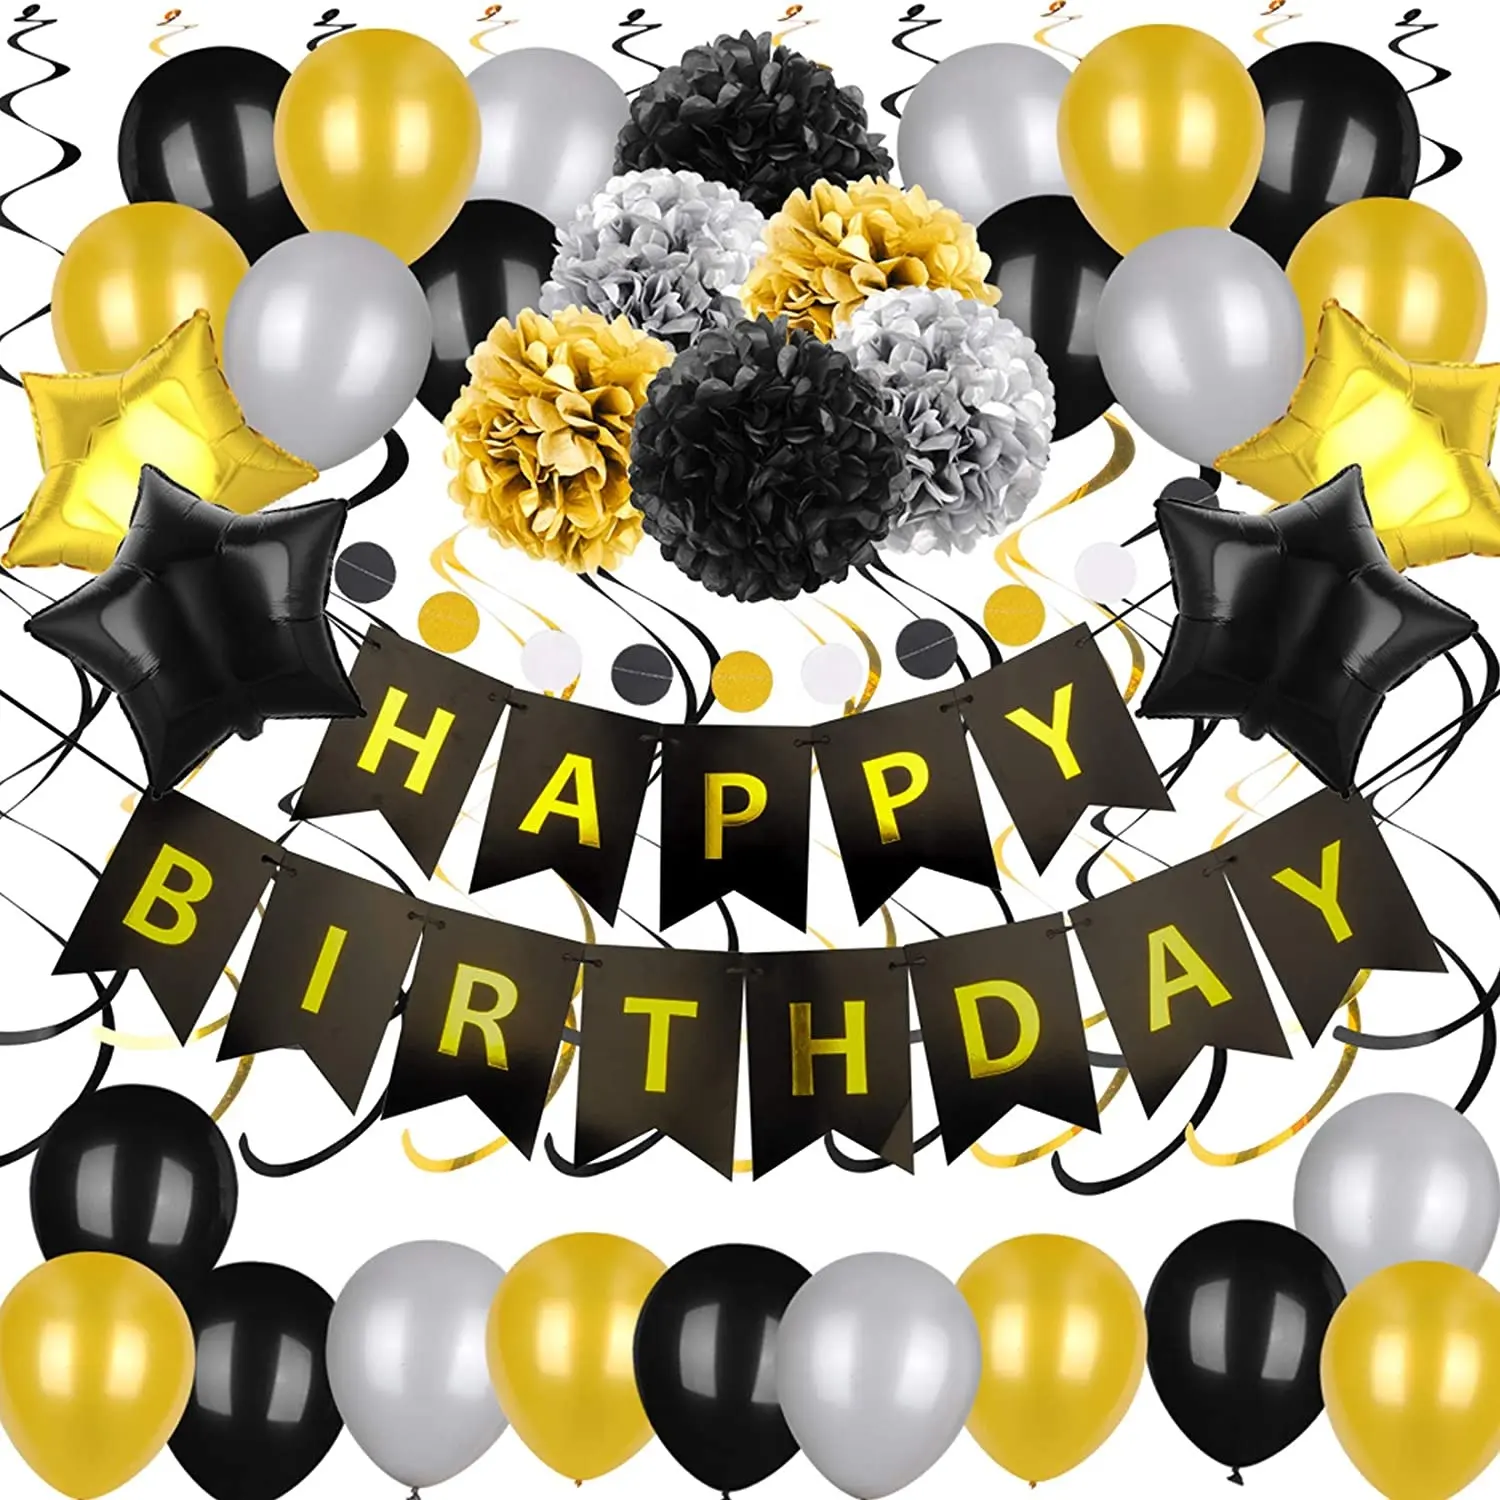 ป้าย Happy Birthday 54ชิ้นสีดำและสีทอง,ป้ายกระดาษฟอยล์ลูกโป่งปอมและเกลียวแขวนสำหรับตกแต่งงานเลี้ยงวันเกิดของเด็กผู้ชาย